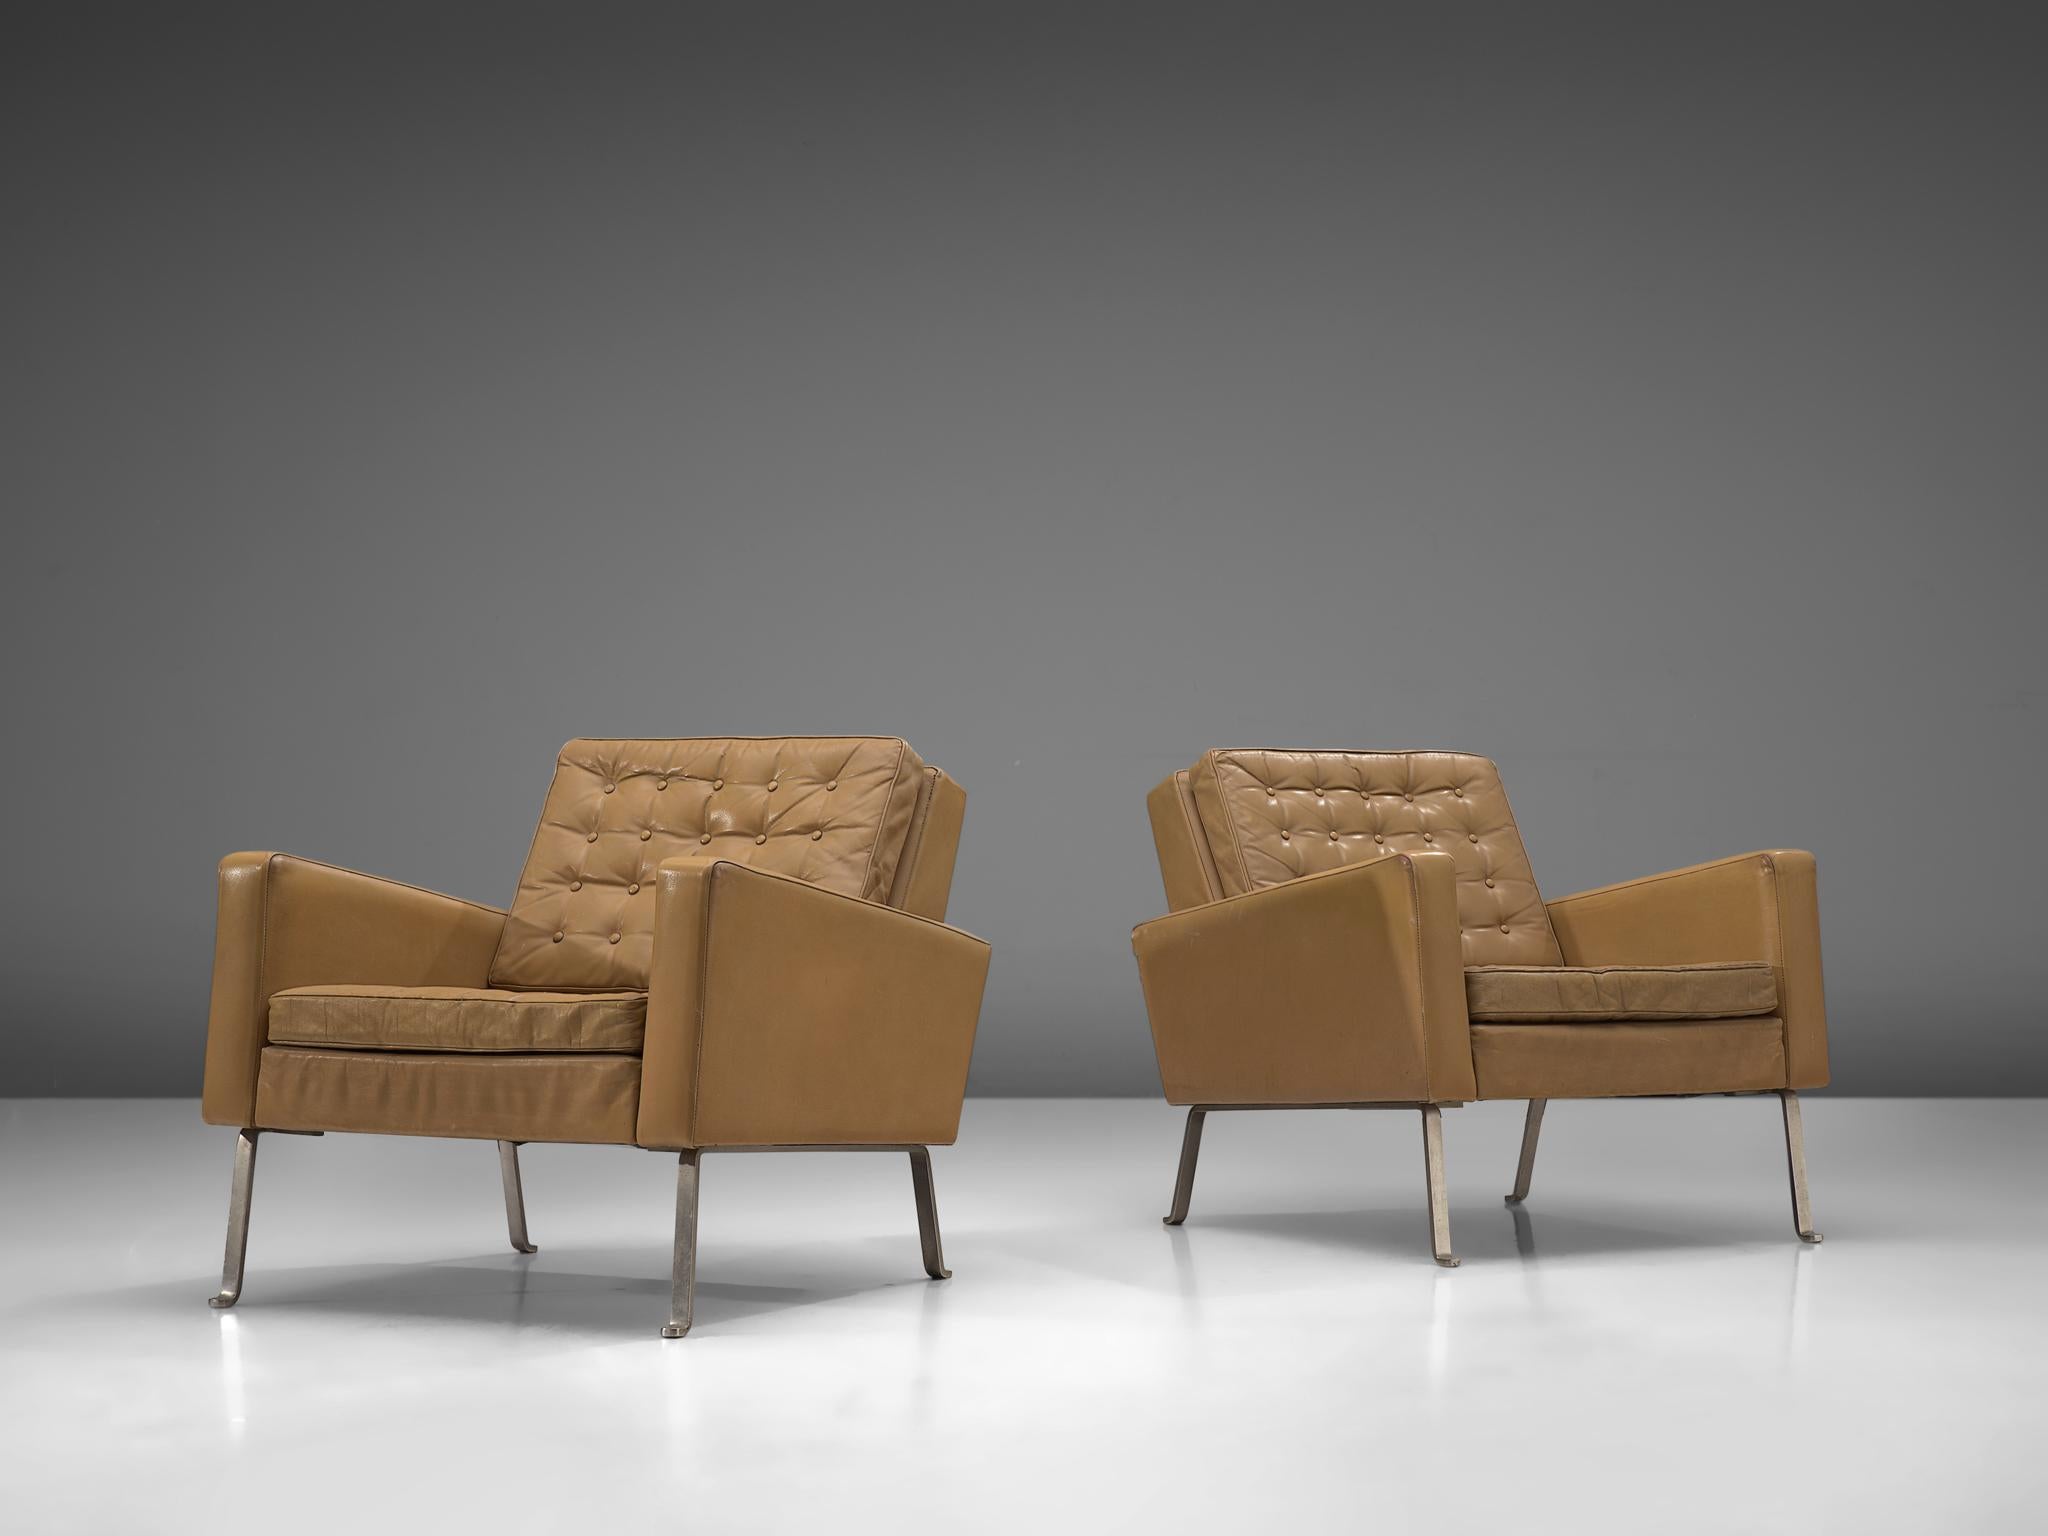 Roland Ranier, Paar Loungesessel, Leder, Stahl, Österreich, 1950er Jahre

Moderne und schöne Sessel. Diese Stühle bilden ein außergewöhnliches Set, das gleichzeitig knackig und warm ist. Das Stahlgestell trägt einen braun-beigen Lederkorpus mit